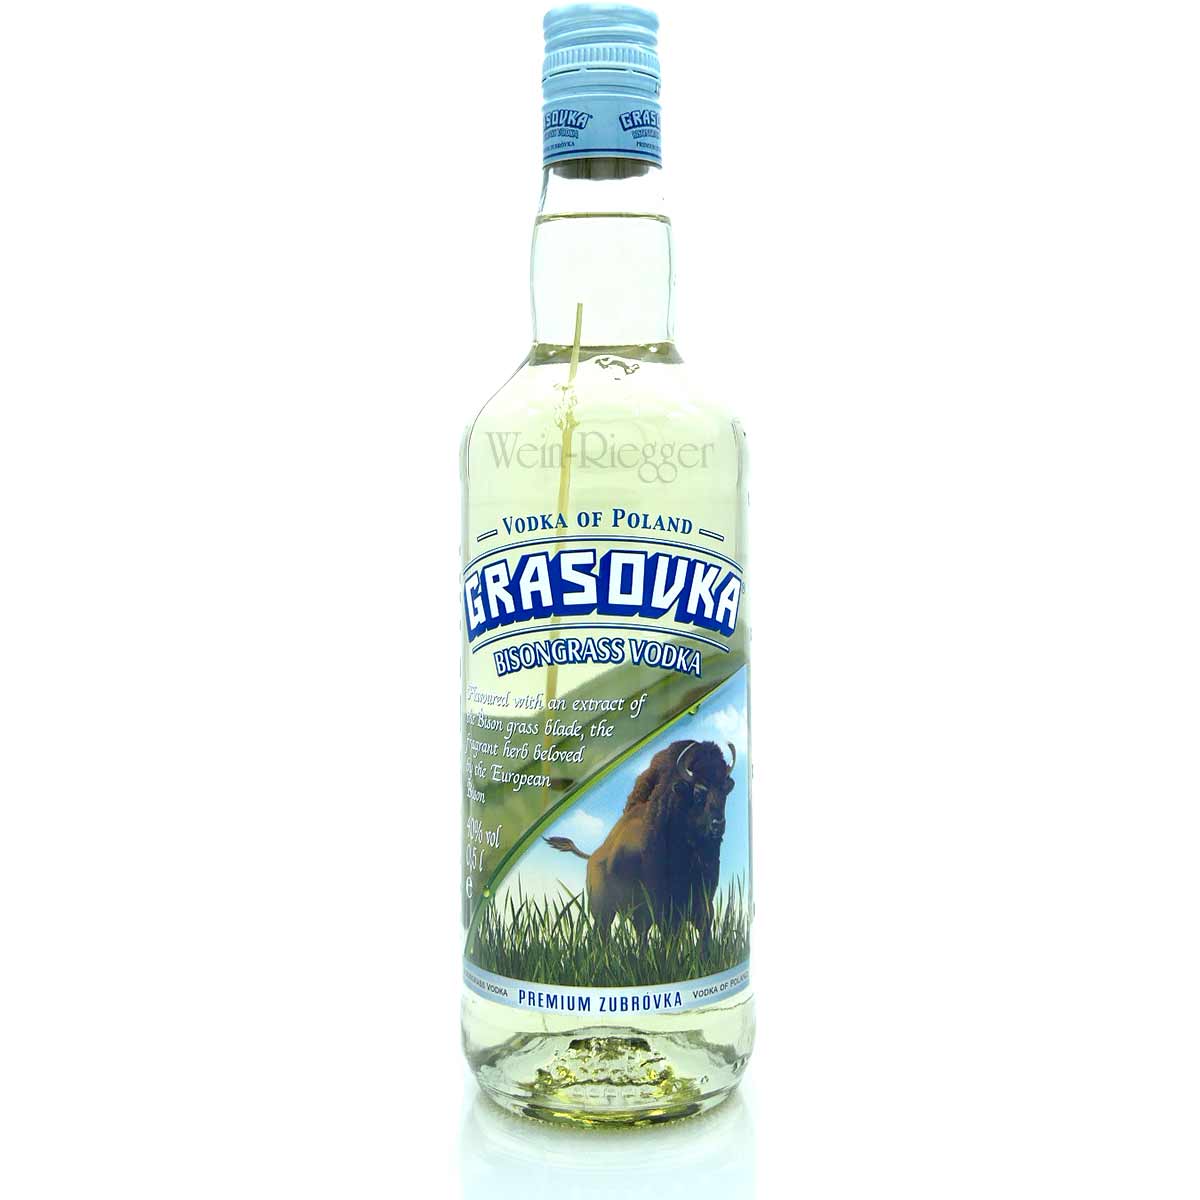 Wodka Grasovka Bisongrass 0,5 Liter | Vodka of Poland